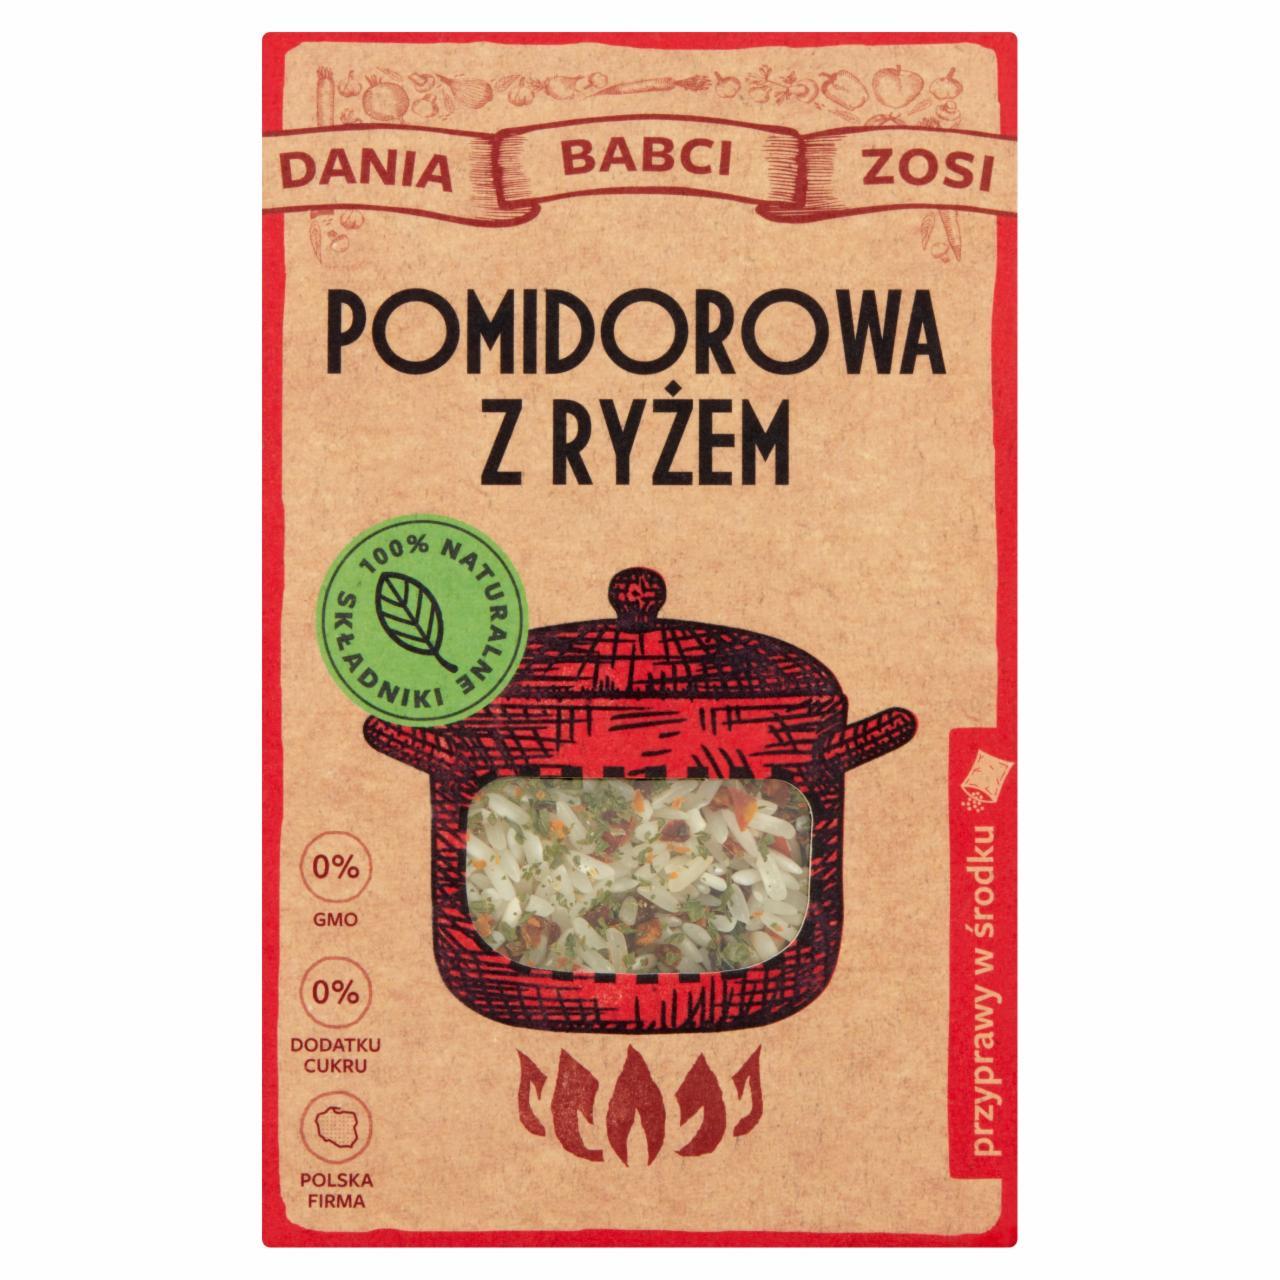 Zdjęcia - Pomidorowa z ryżem Dania Babci Zosi